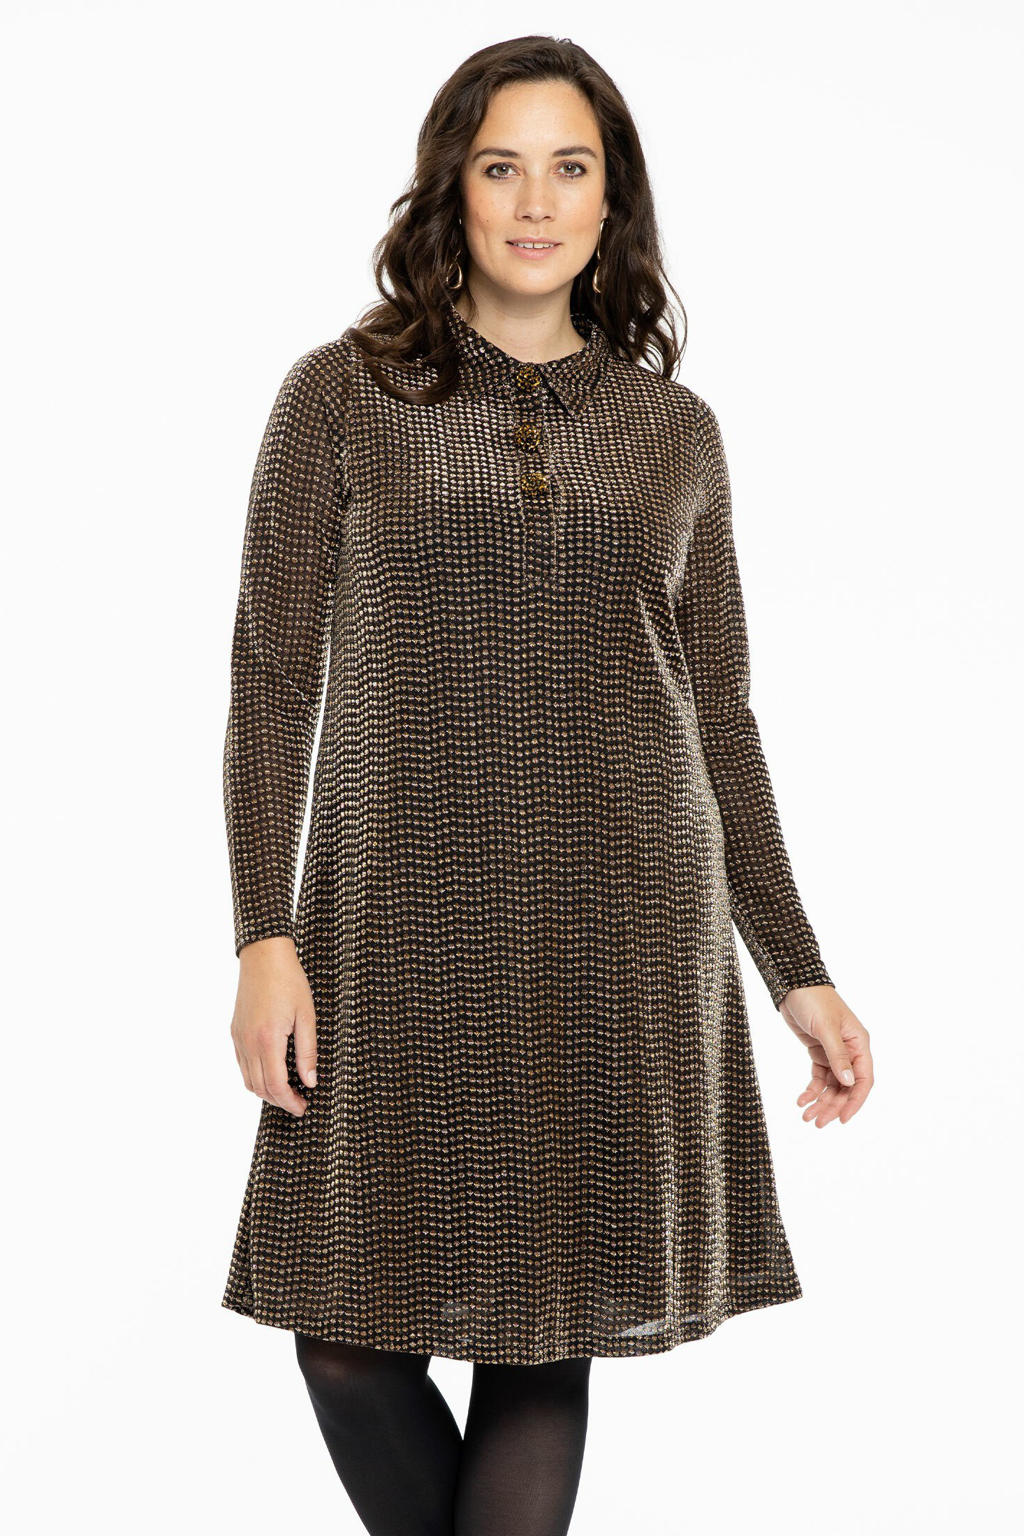 Yoek semi-transparante jurk met all over print en glitters zwart/brons